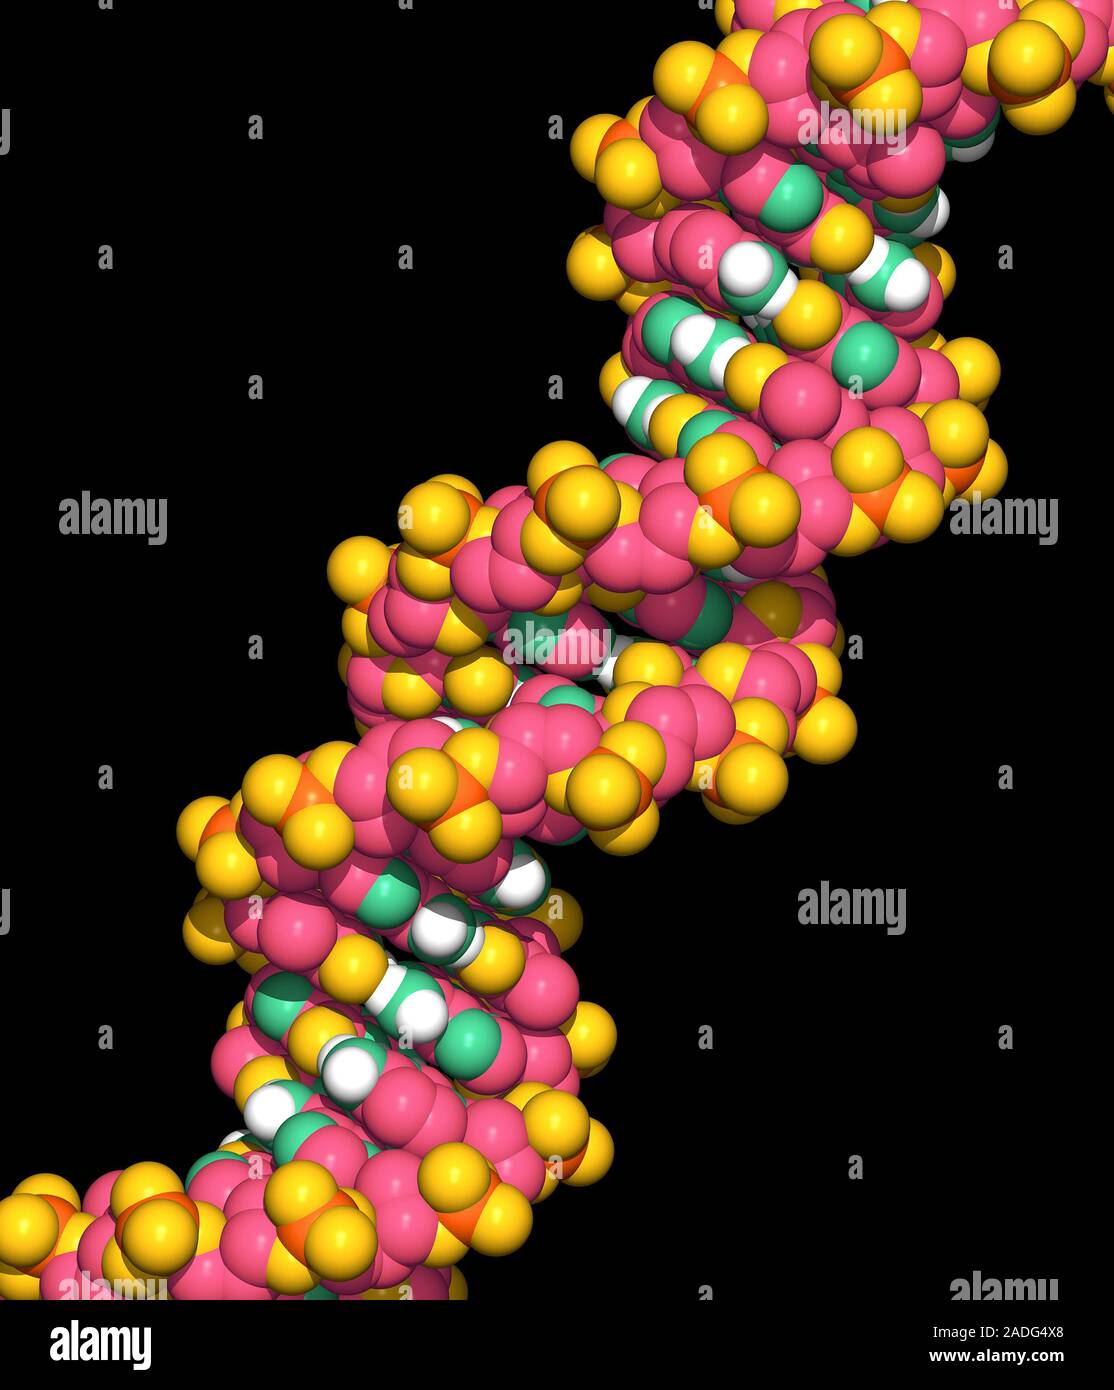 El ADN. El modelo de ordenador de parte de una molécula de ADN (ácido  desoxirribonucleico). El ADN es la molécula que controla el crecimiento y  desarrollo de todos los que viven t